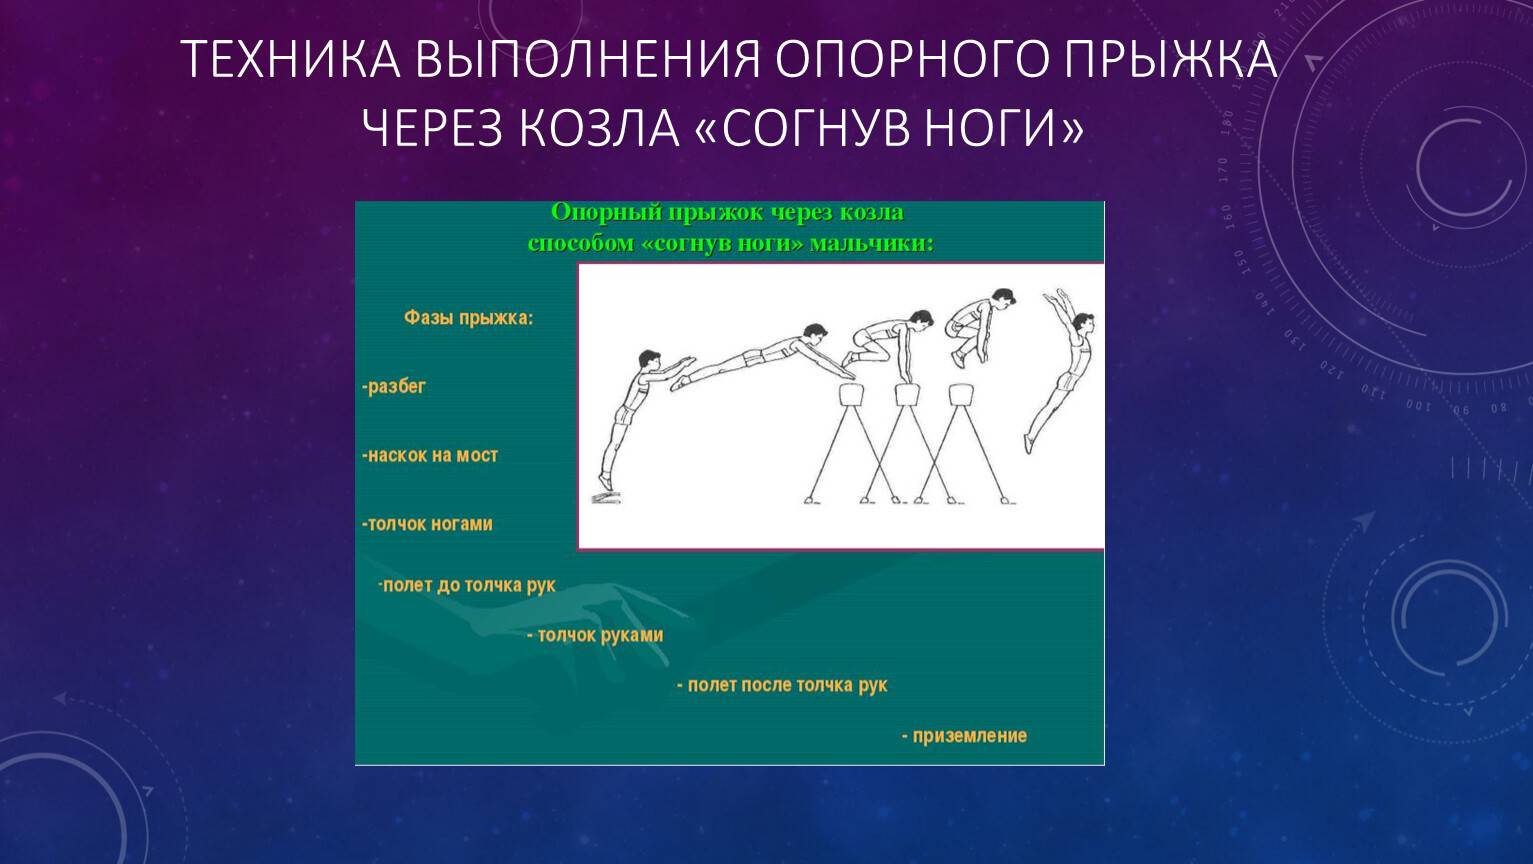 Петров п.к. методика преподавания гимнастики в школе - файл n1.doc